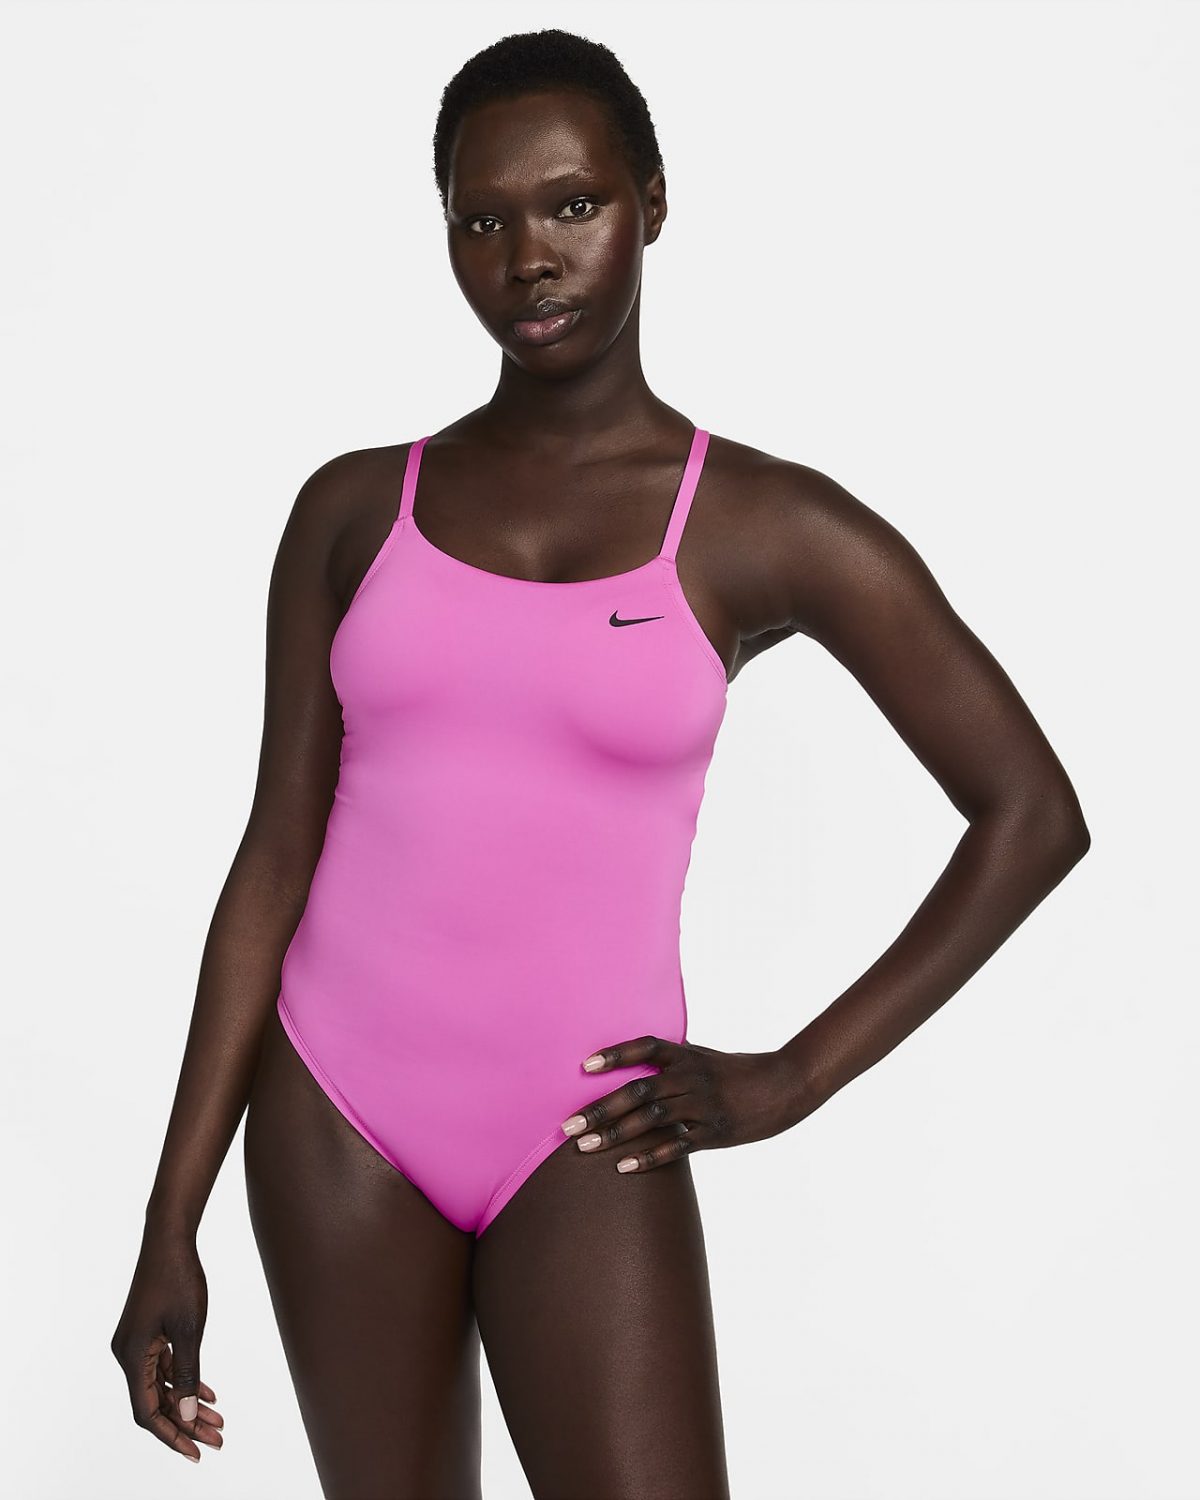 Женский купальник Nike Swim фото